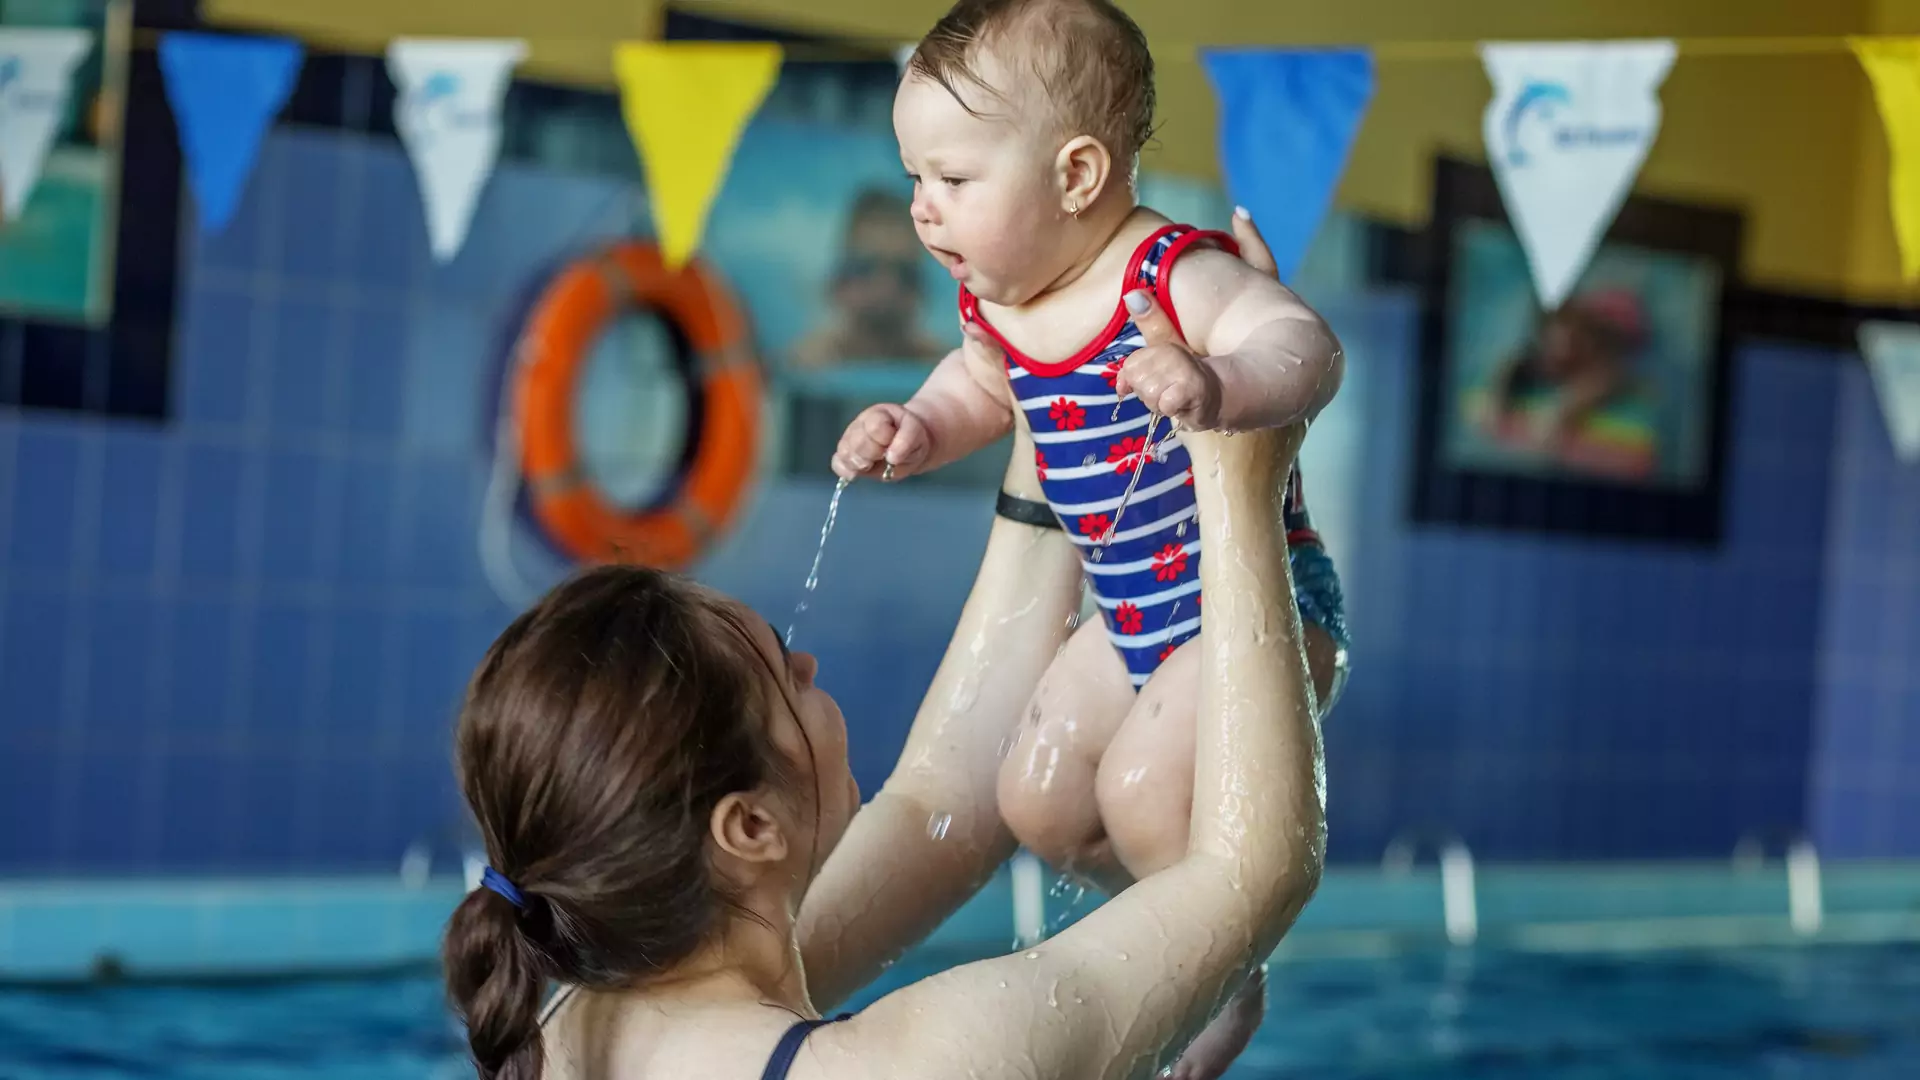 Poszła z niemowlęciem na basen. "Zostałam upokorzona przez ratownika"